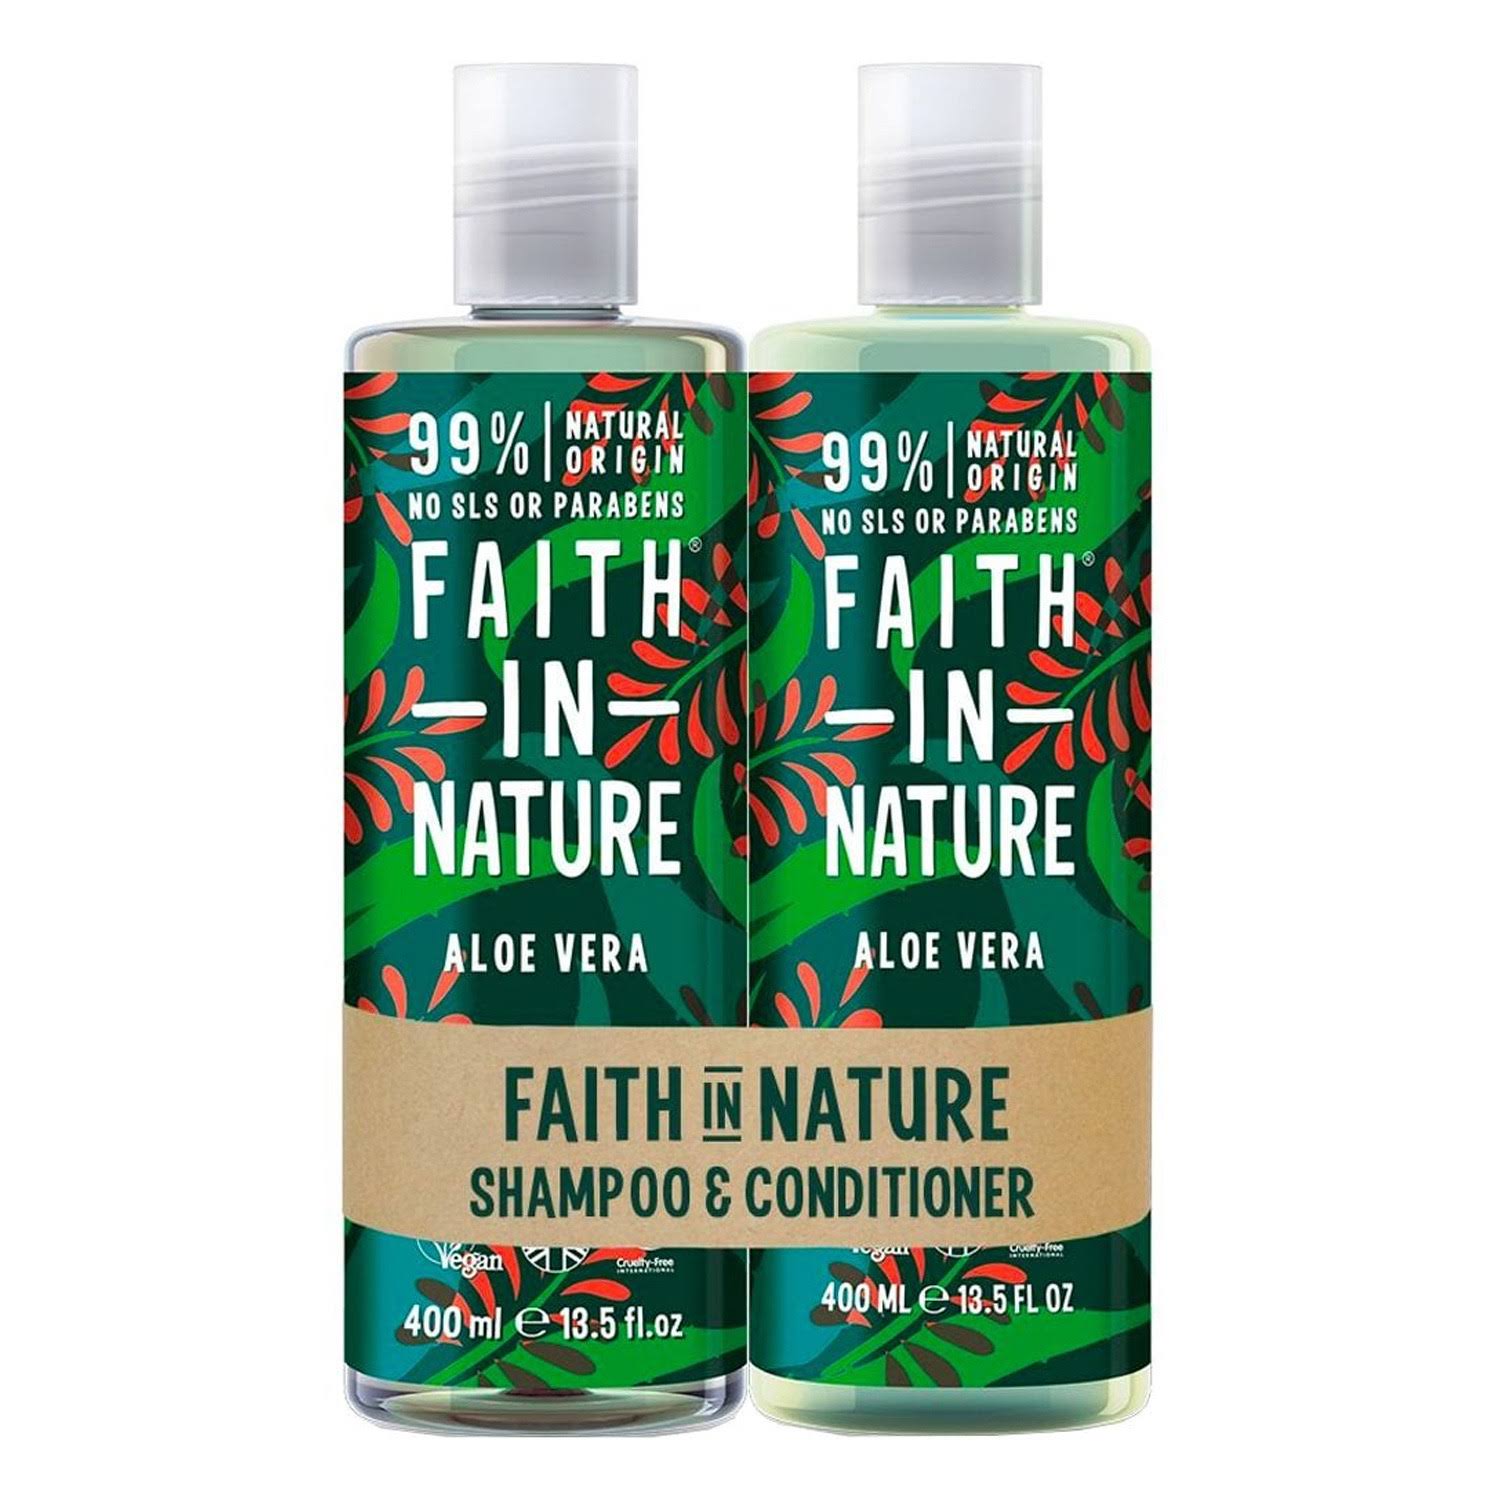 Faith in Nature Aloe Vera Shampoo and Conditioner, 400 ml